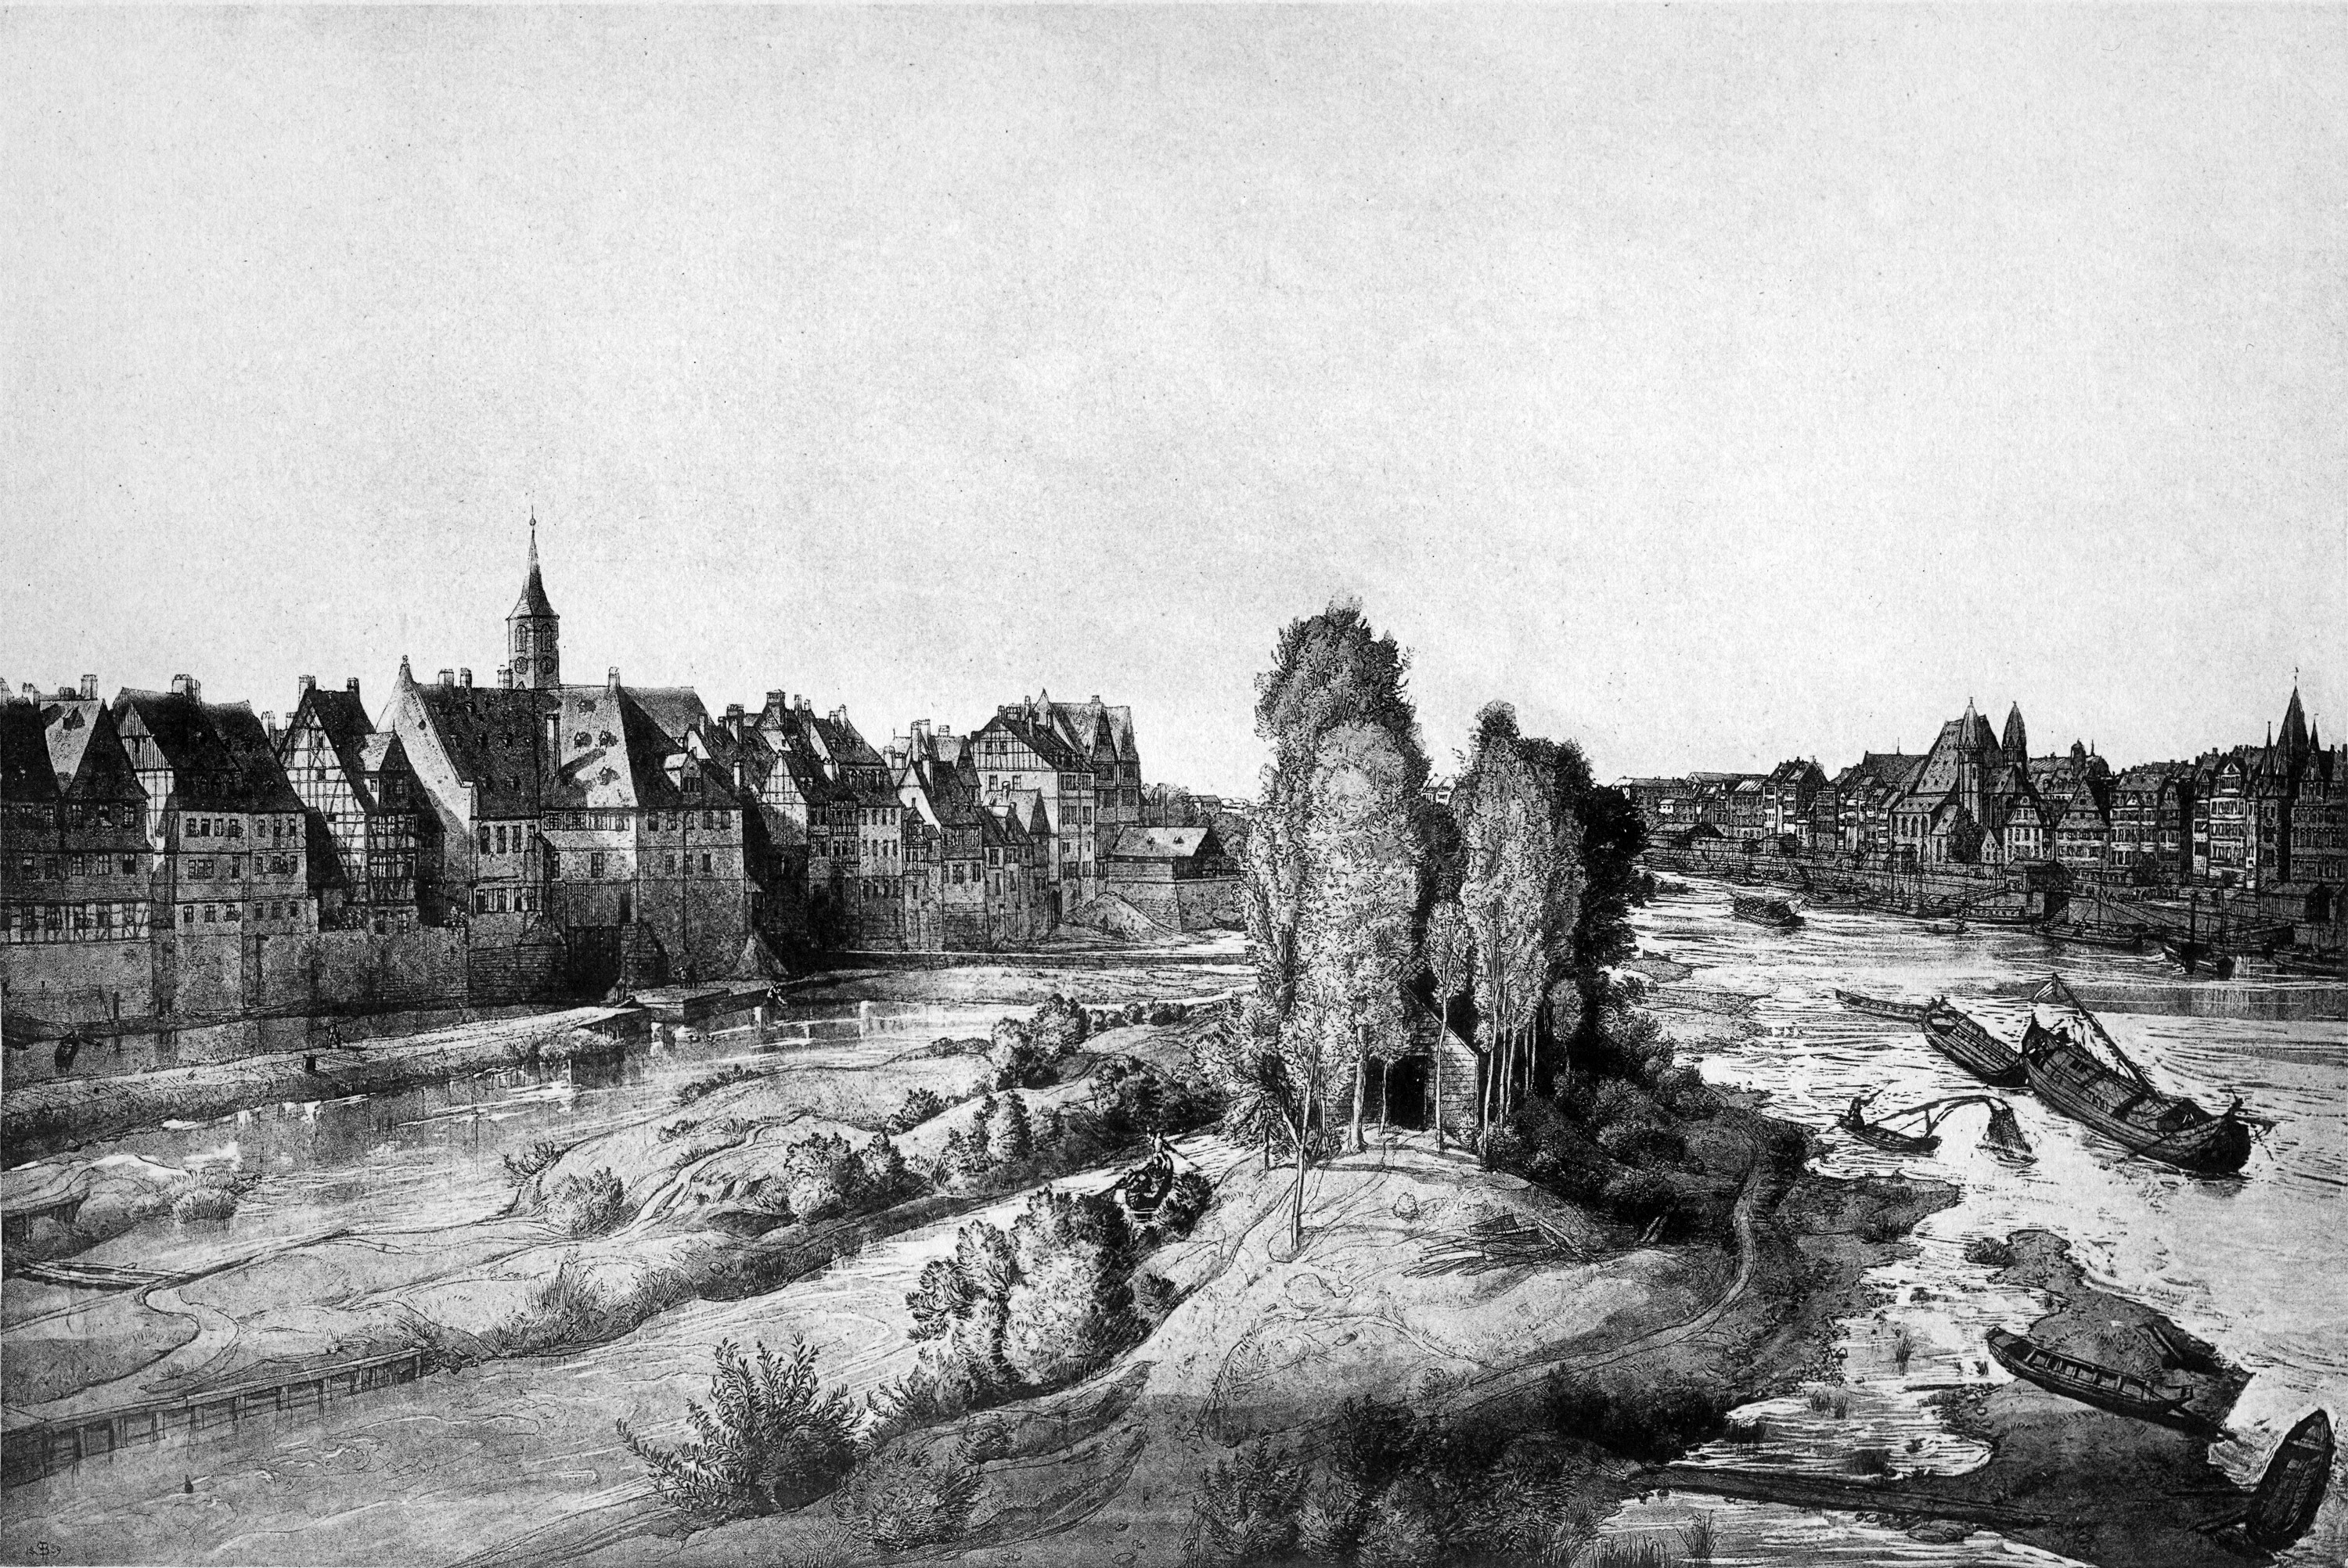 Frankfurt Am Main-Peter Becker-BAAF-016-Aussicht von der alten Bruecke nach Westen-1858